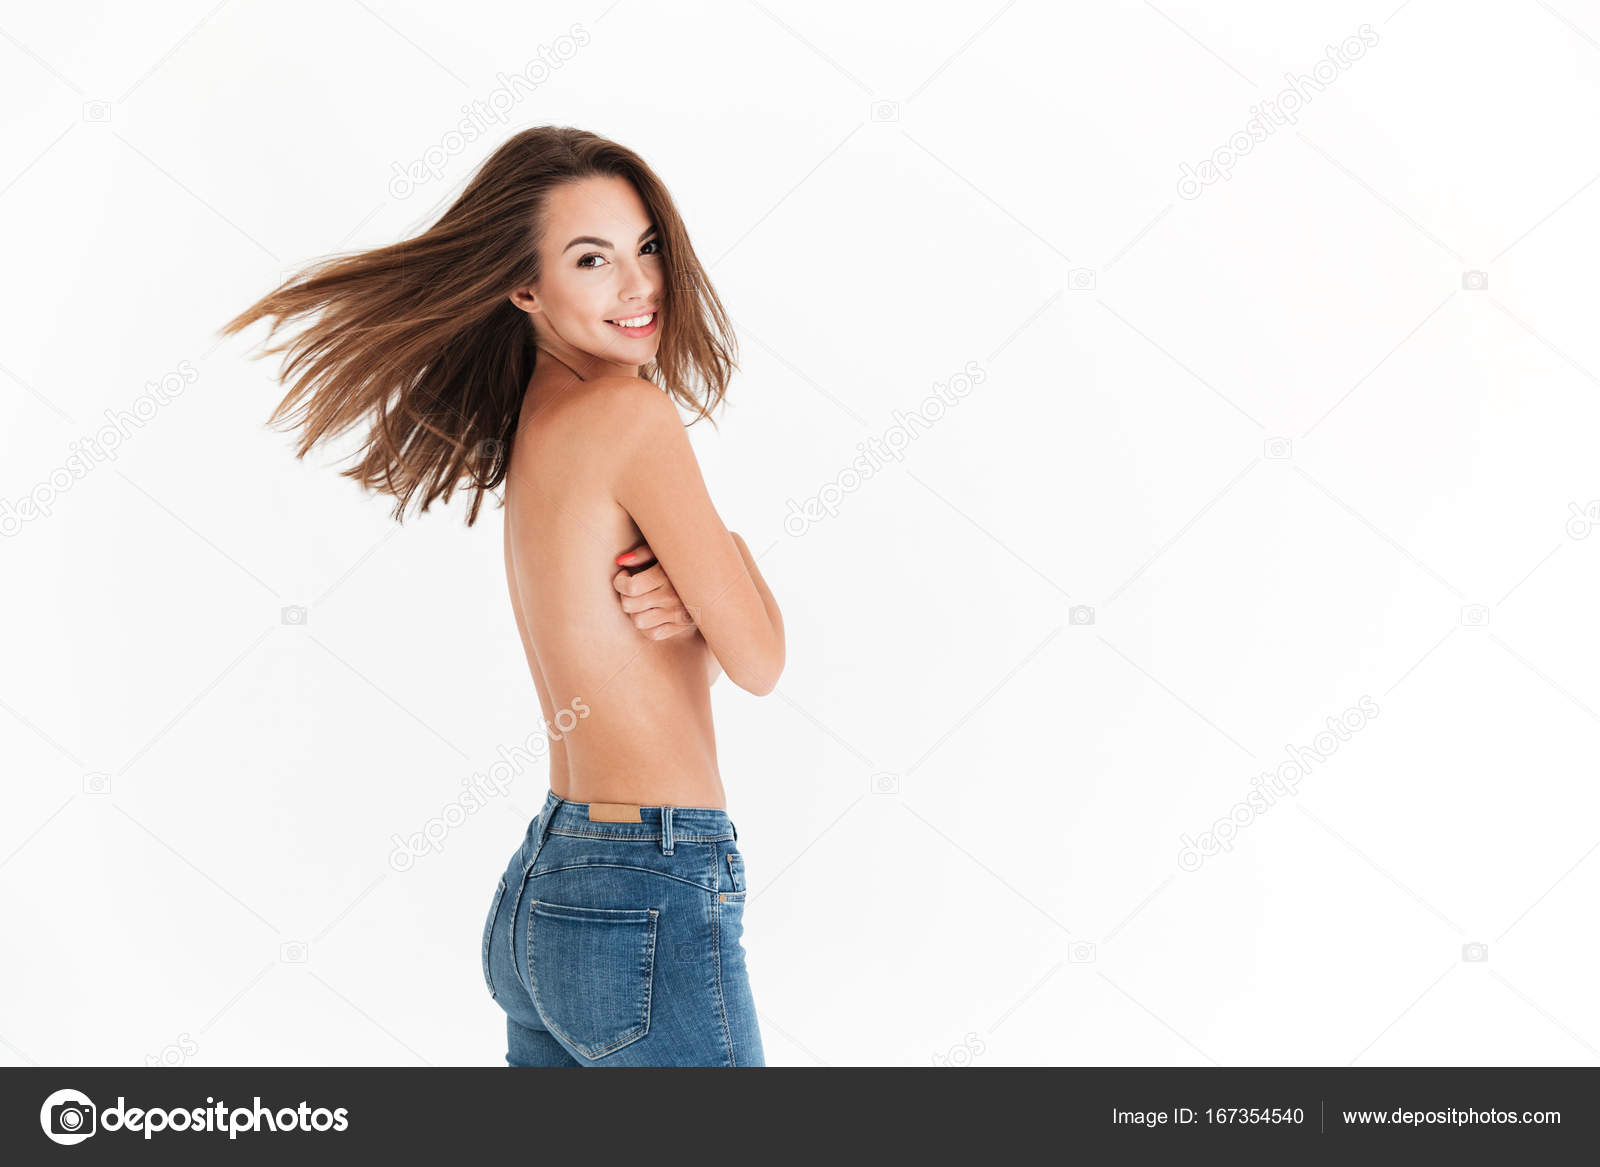 mutlu yarı çıplak kadın poz yan görünüm stok fotoğrafçılık